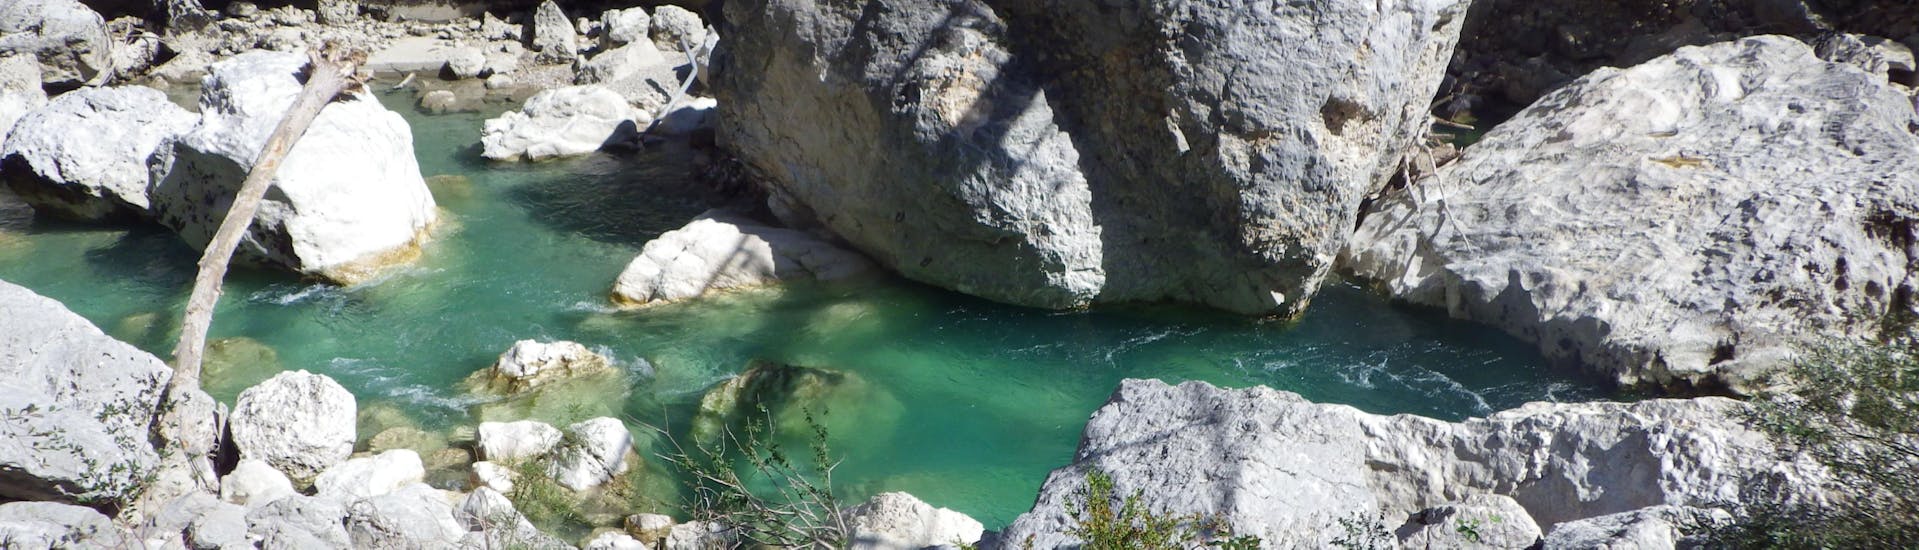 River Trekking en el Gran Cañón del Verdon - Deportivo.